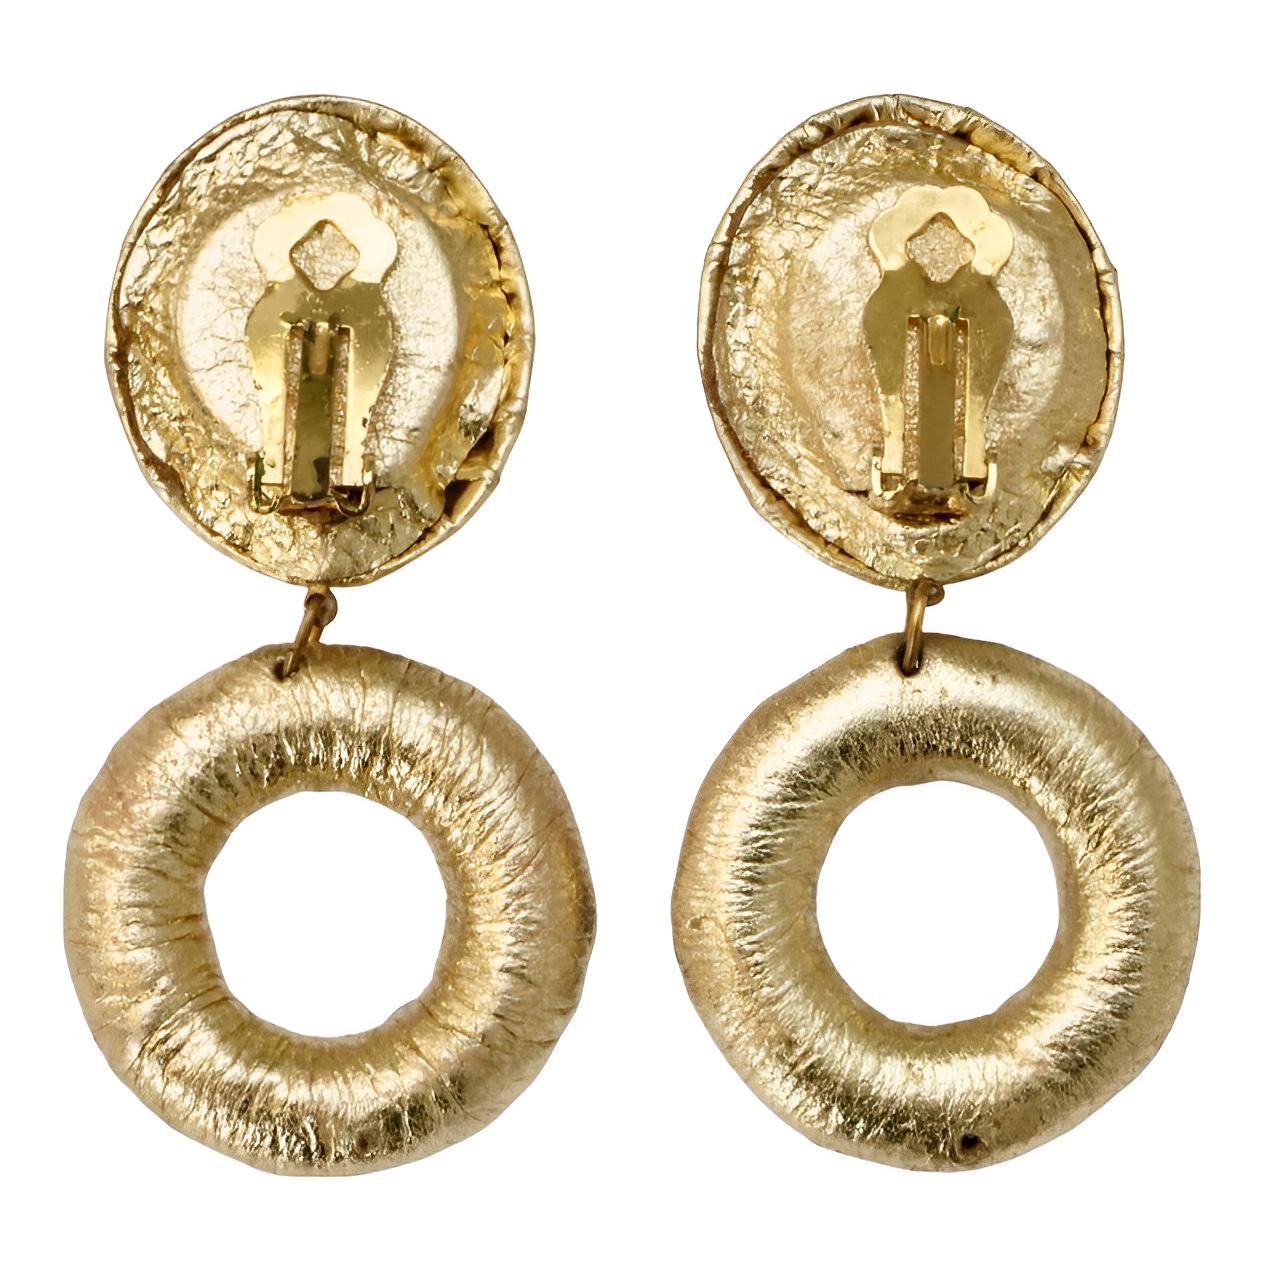 Fabelhafte goldene Leder-Clip-Ohrringe mit mehrfarbigen Strasssteinen aus Glas für den Ring und einem magentafarbenen, smaragdgrünen Strassstein für die Spitze.

Die Länge beträgt 7,2 cm / 2,8 Zoll, der Durchmesser der Reifen beträgt 3,4 cm / 1,3